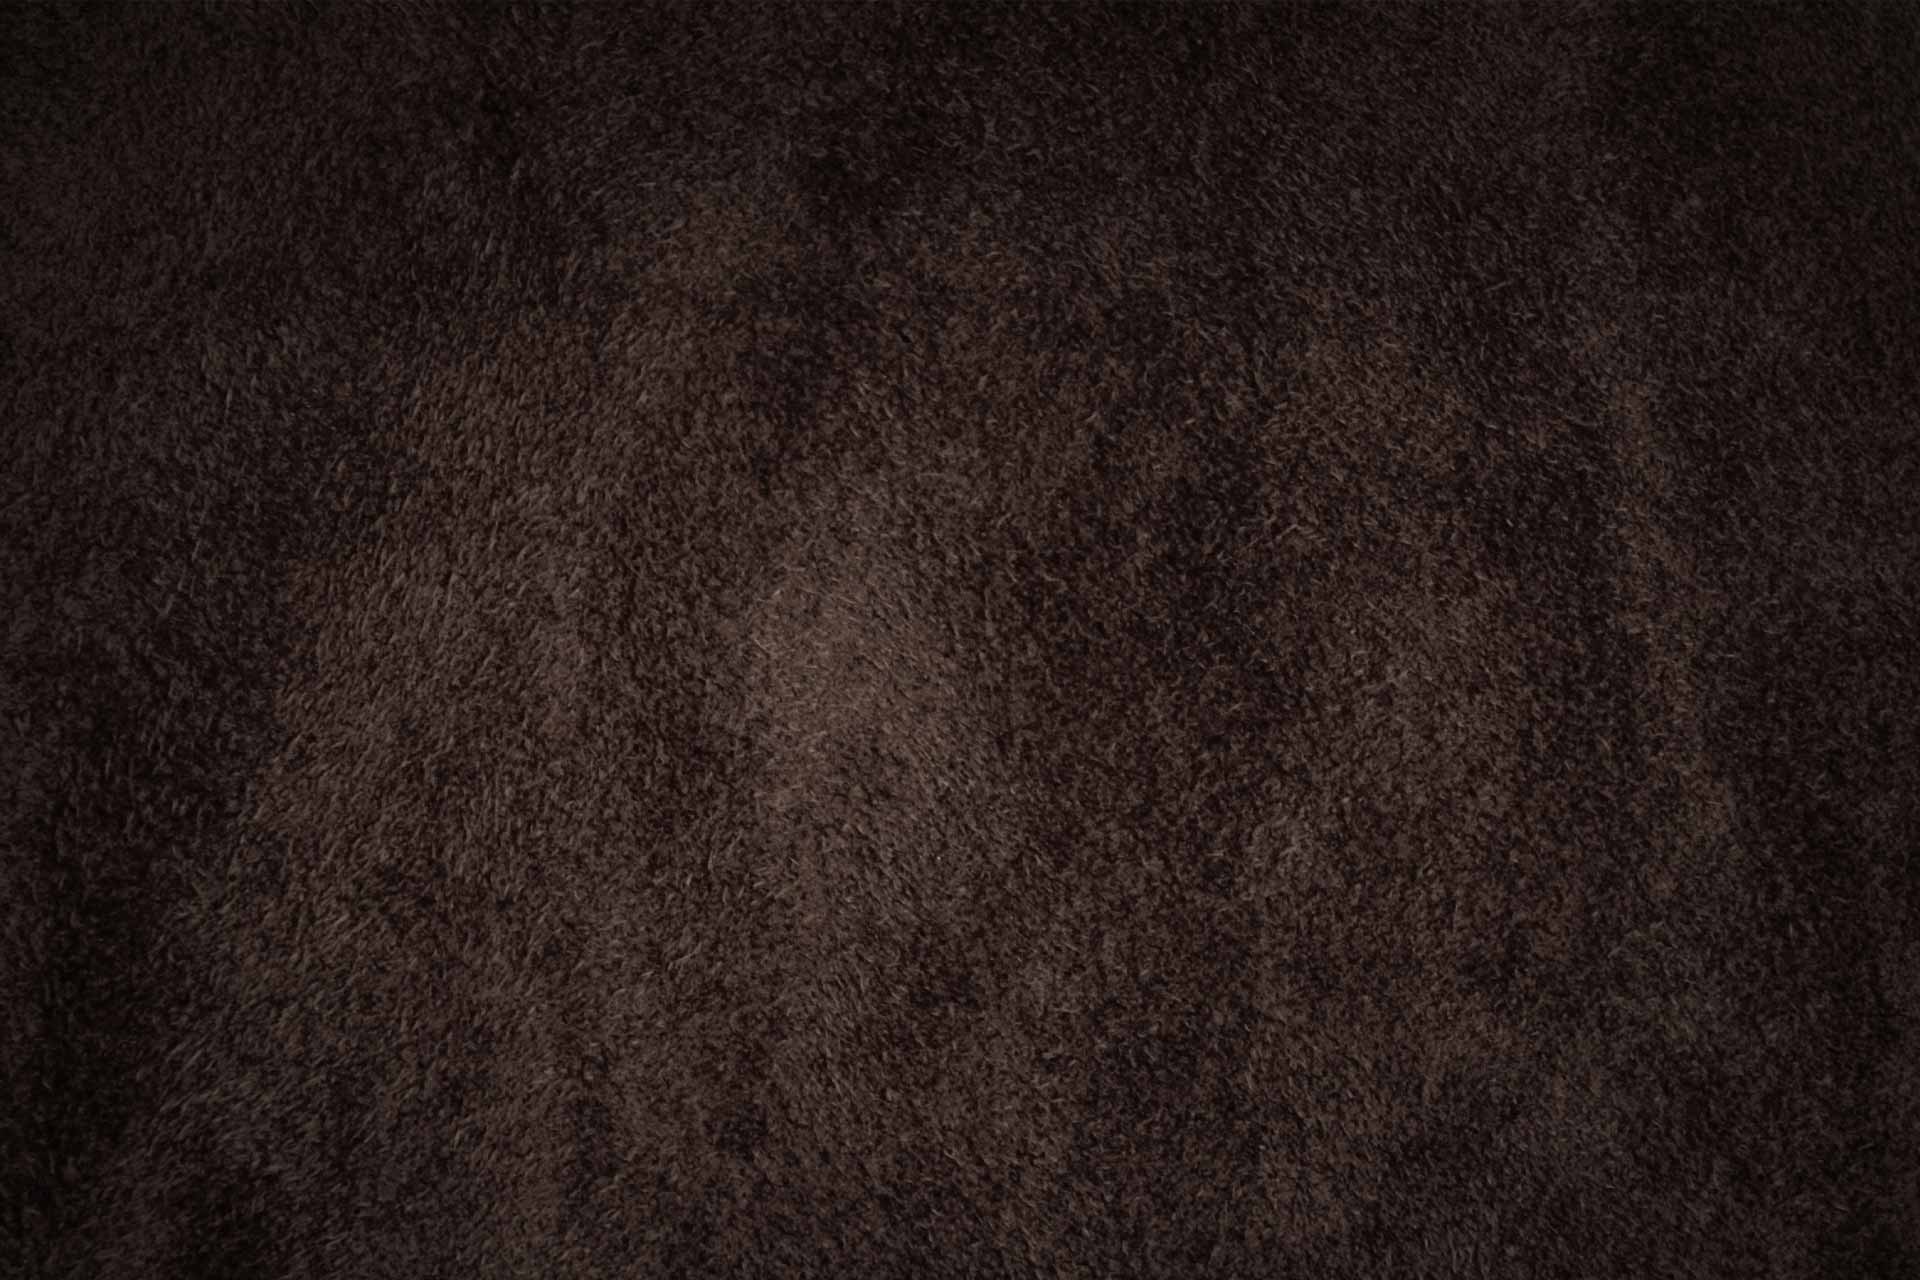 texture dark background leather